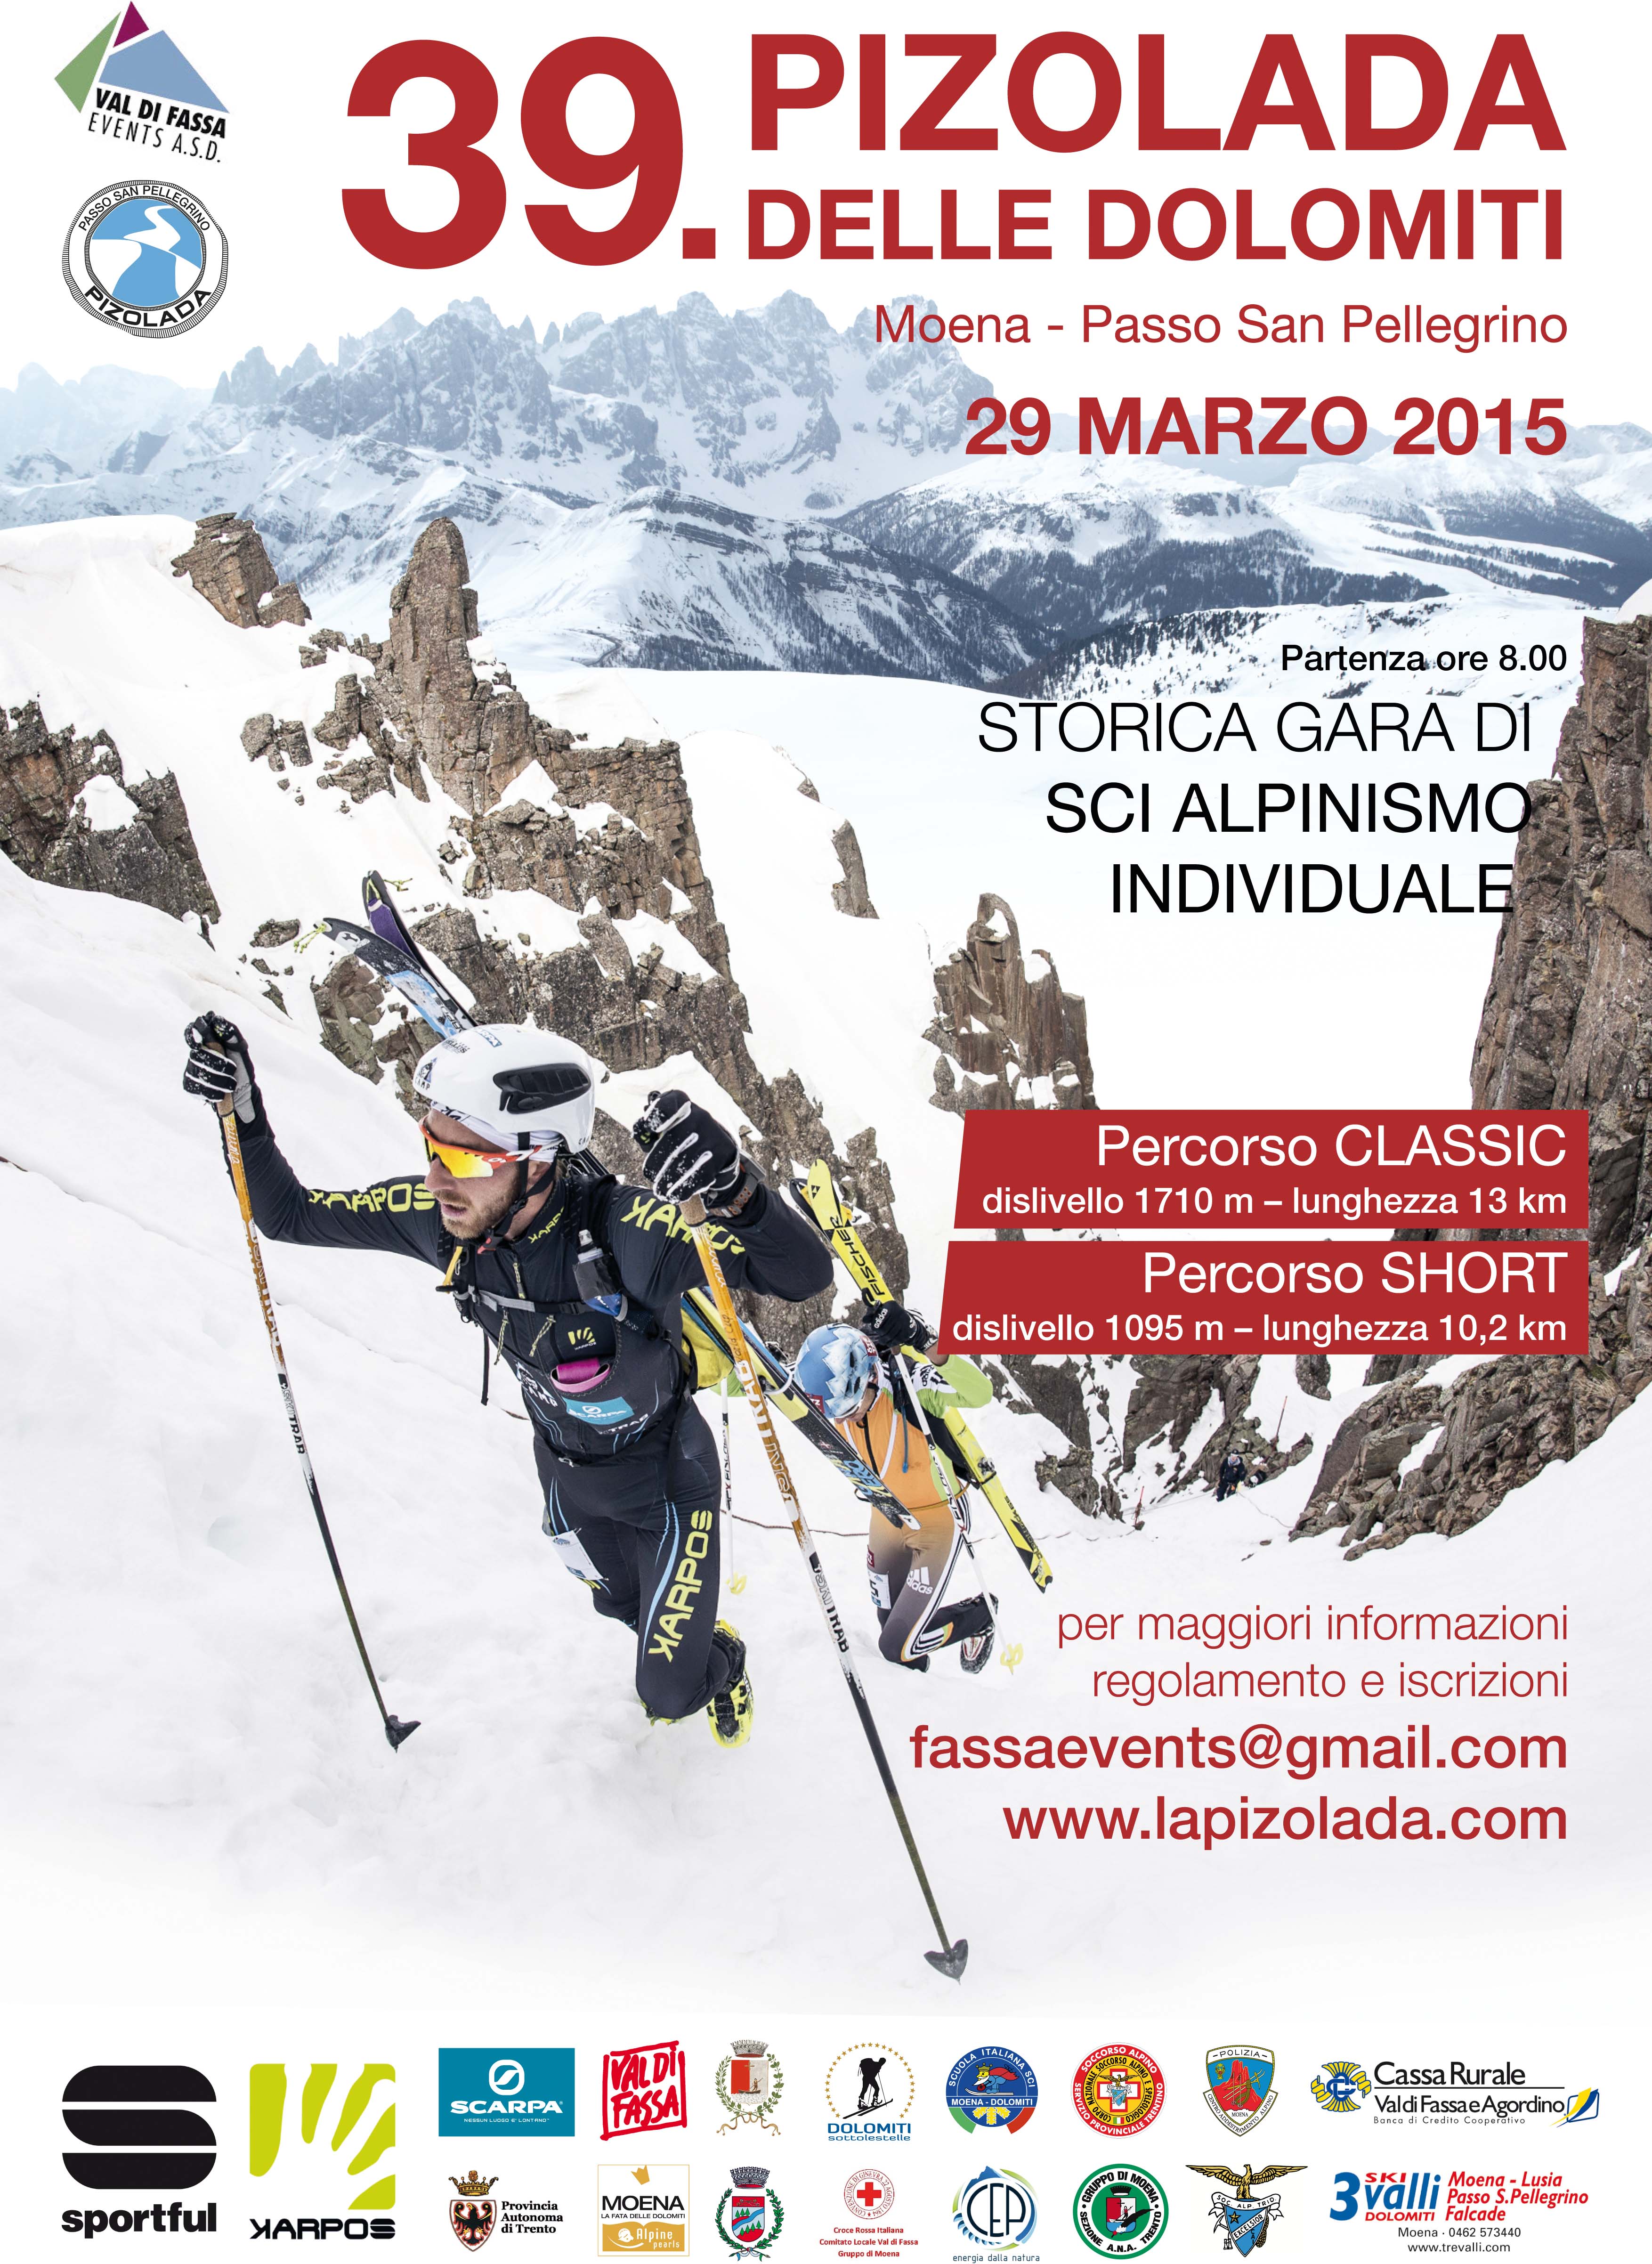 Pizolada delle Dolomiti 2015: tracciati e iscrizioni